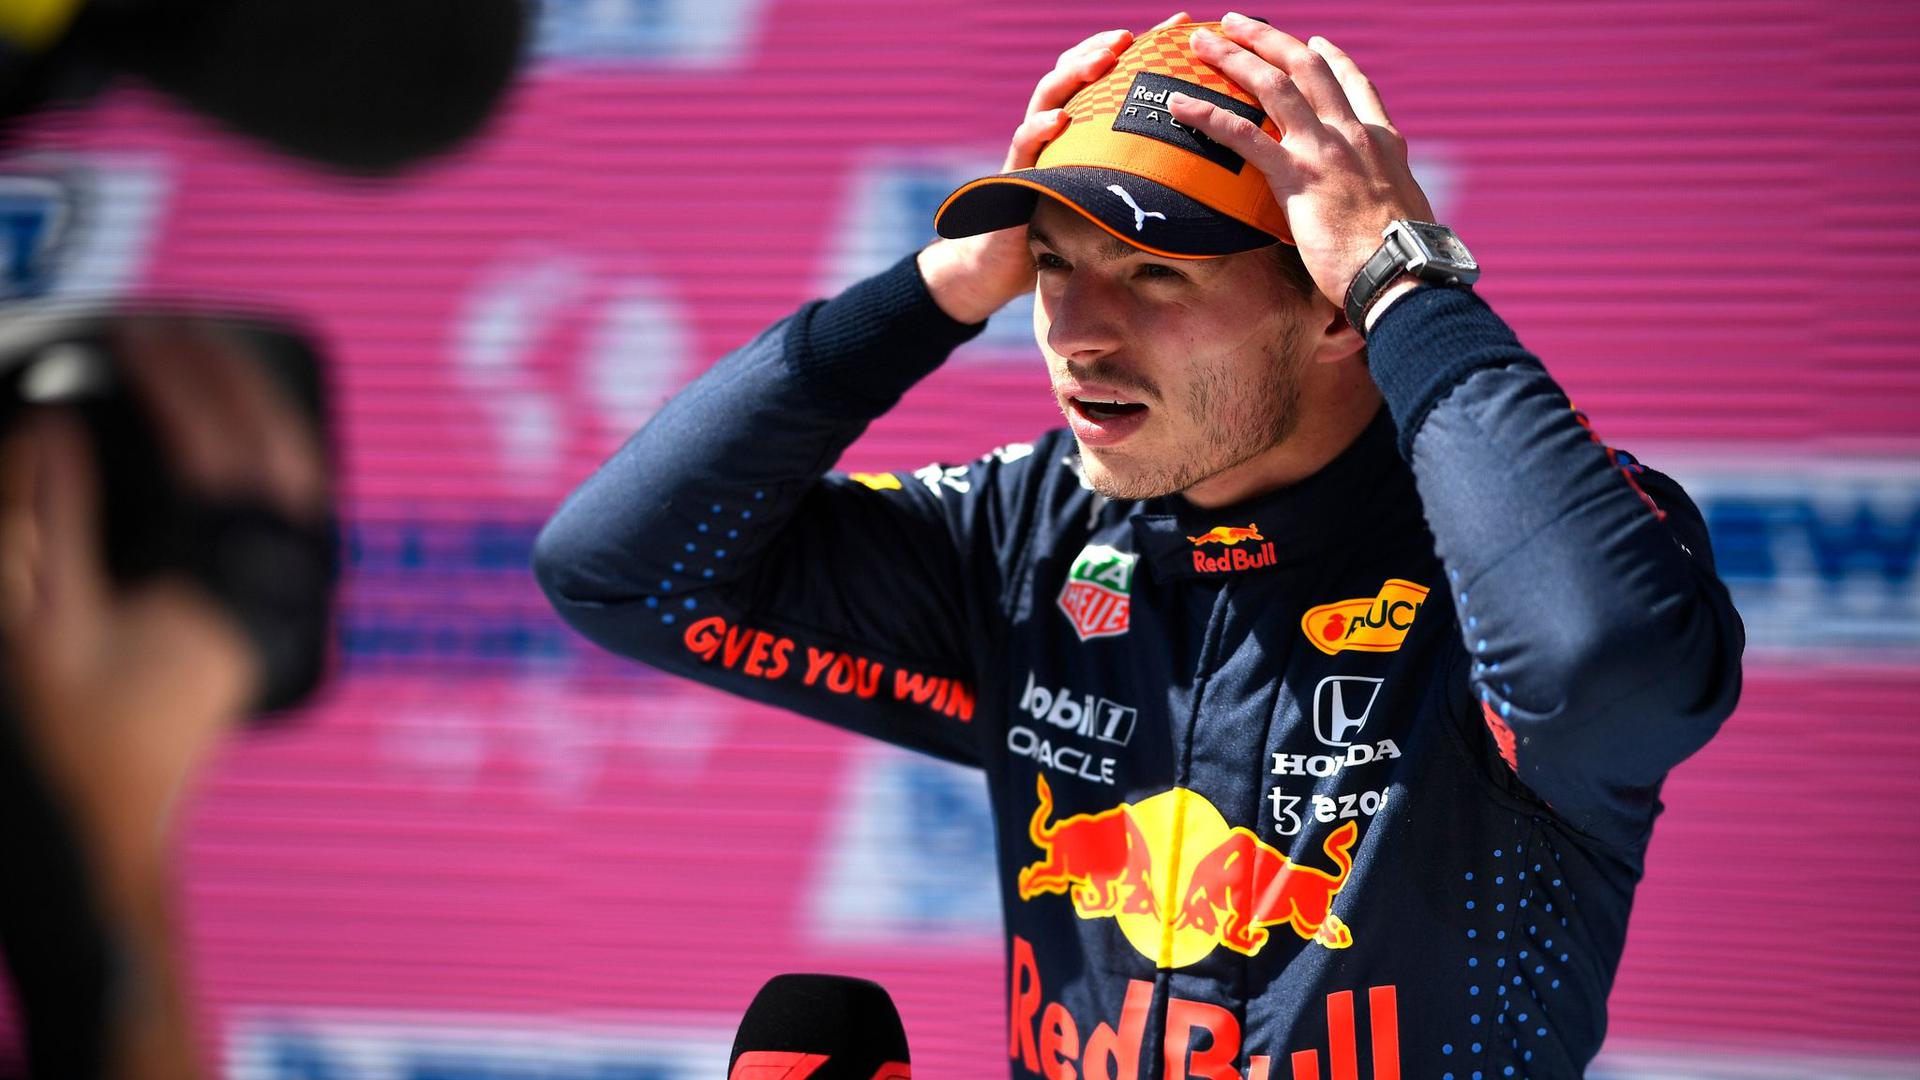 Kritisiert das Verhalten von Lewis Hamilton und dem Mercedes-Rennstall nach dem Crash in Silverstone: Max Verstappen.